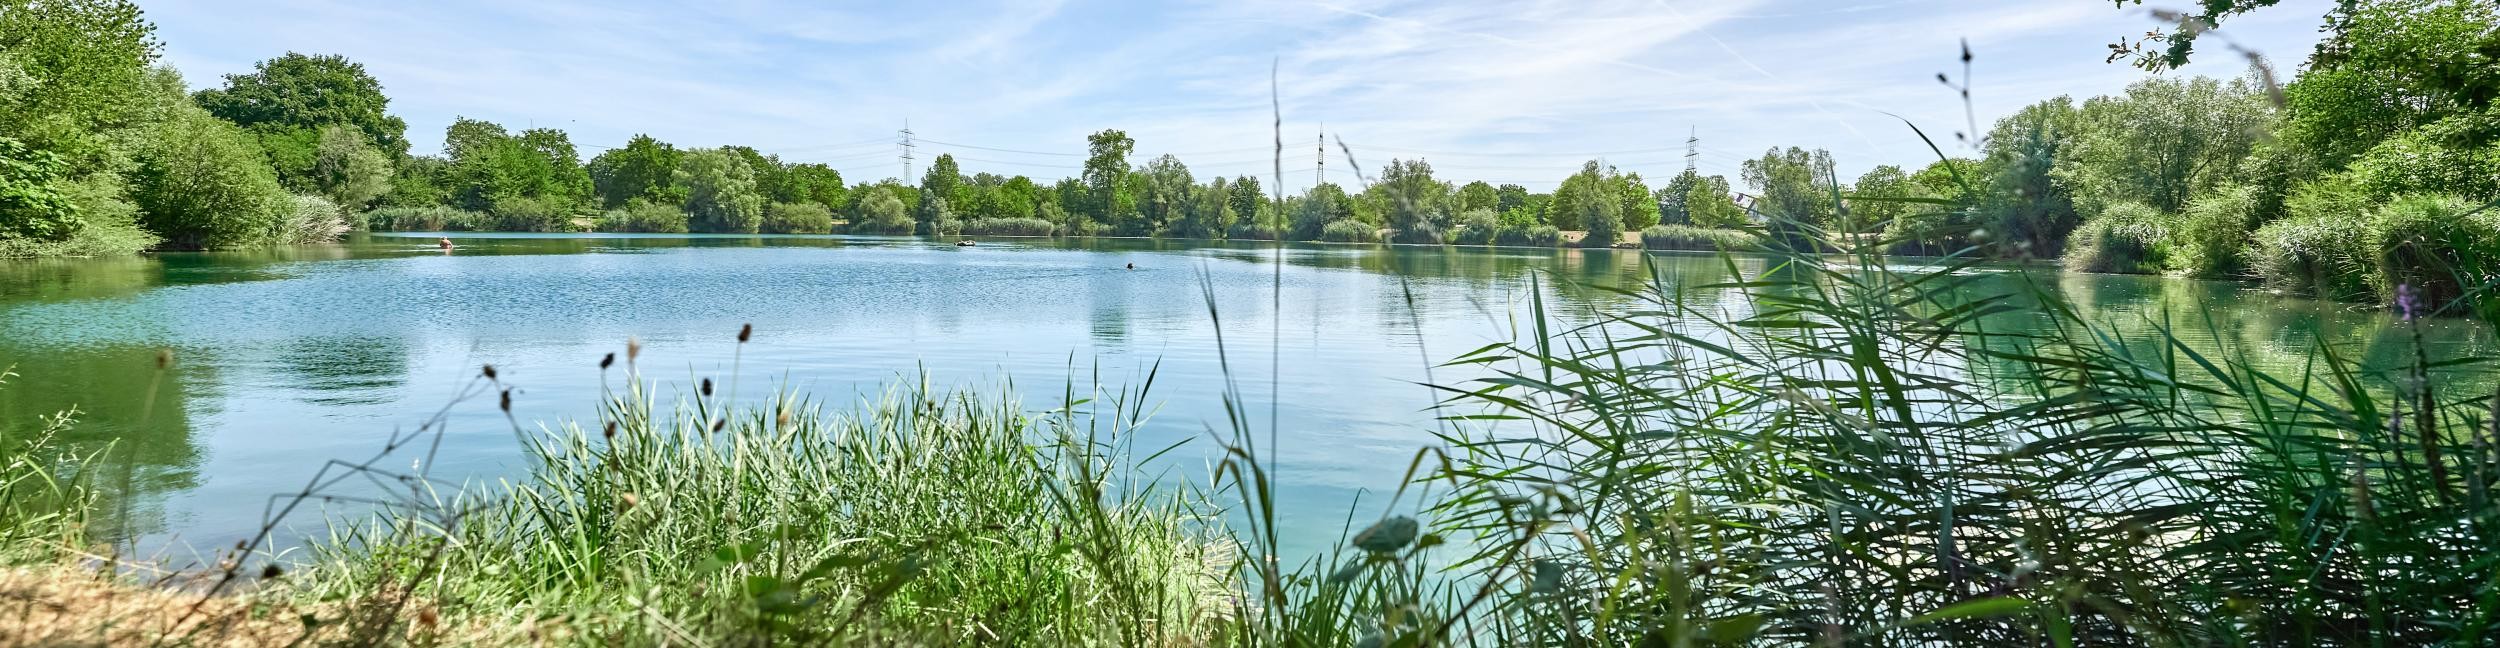 Ufer am Lindensee in Ottersdorf